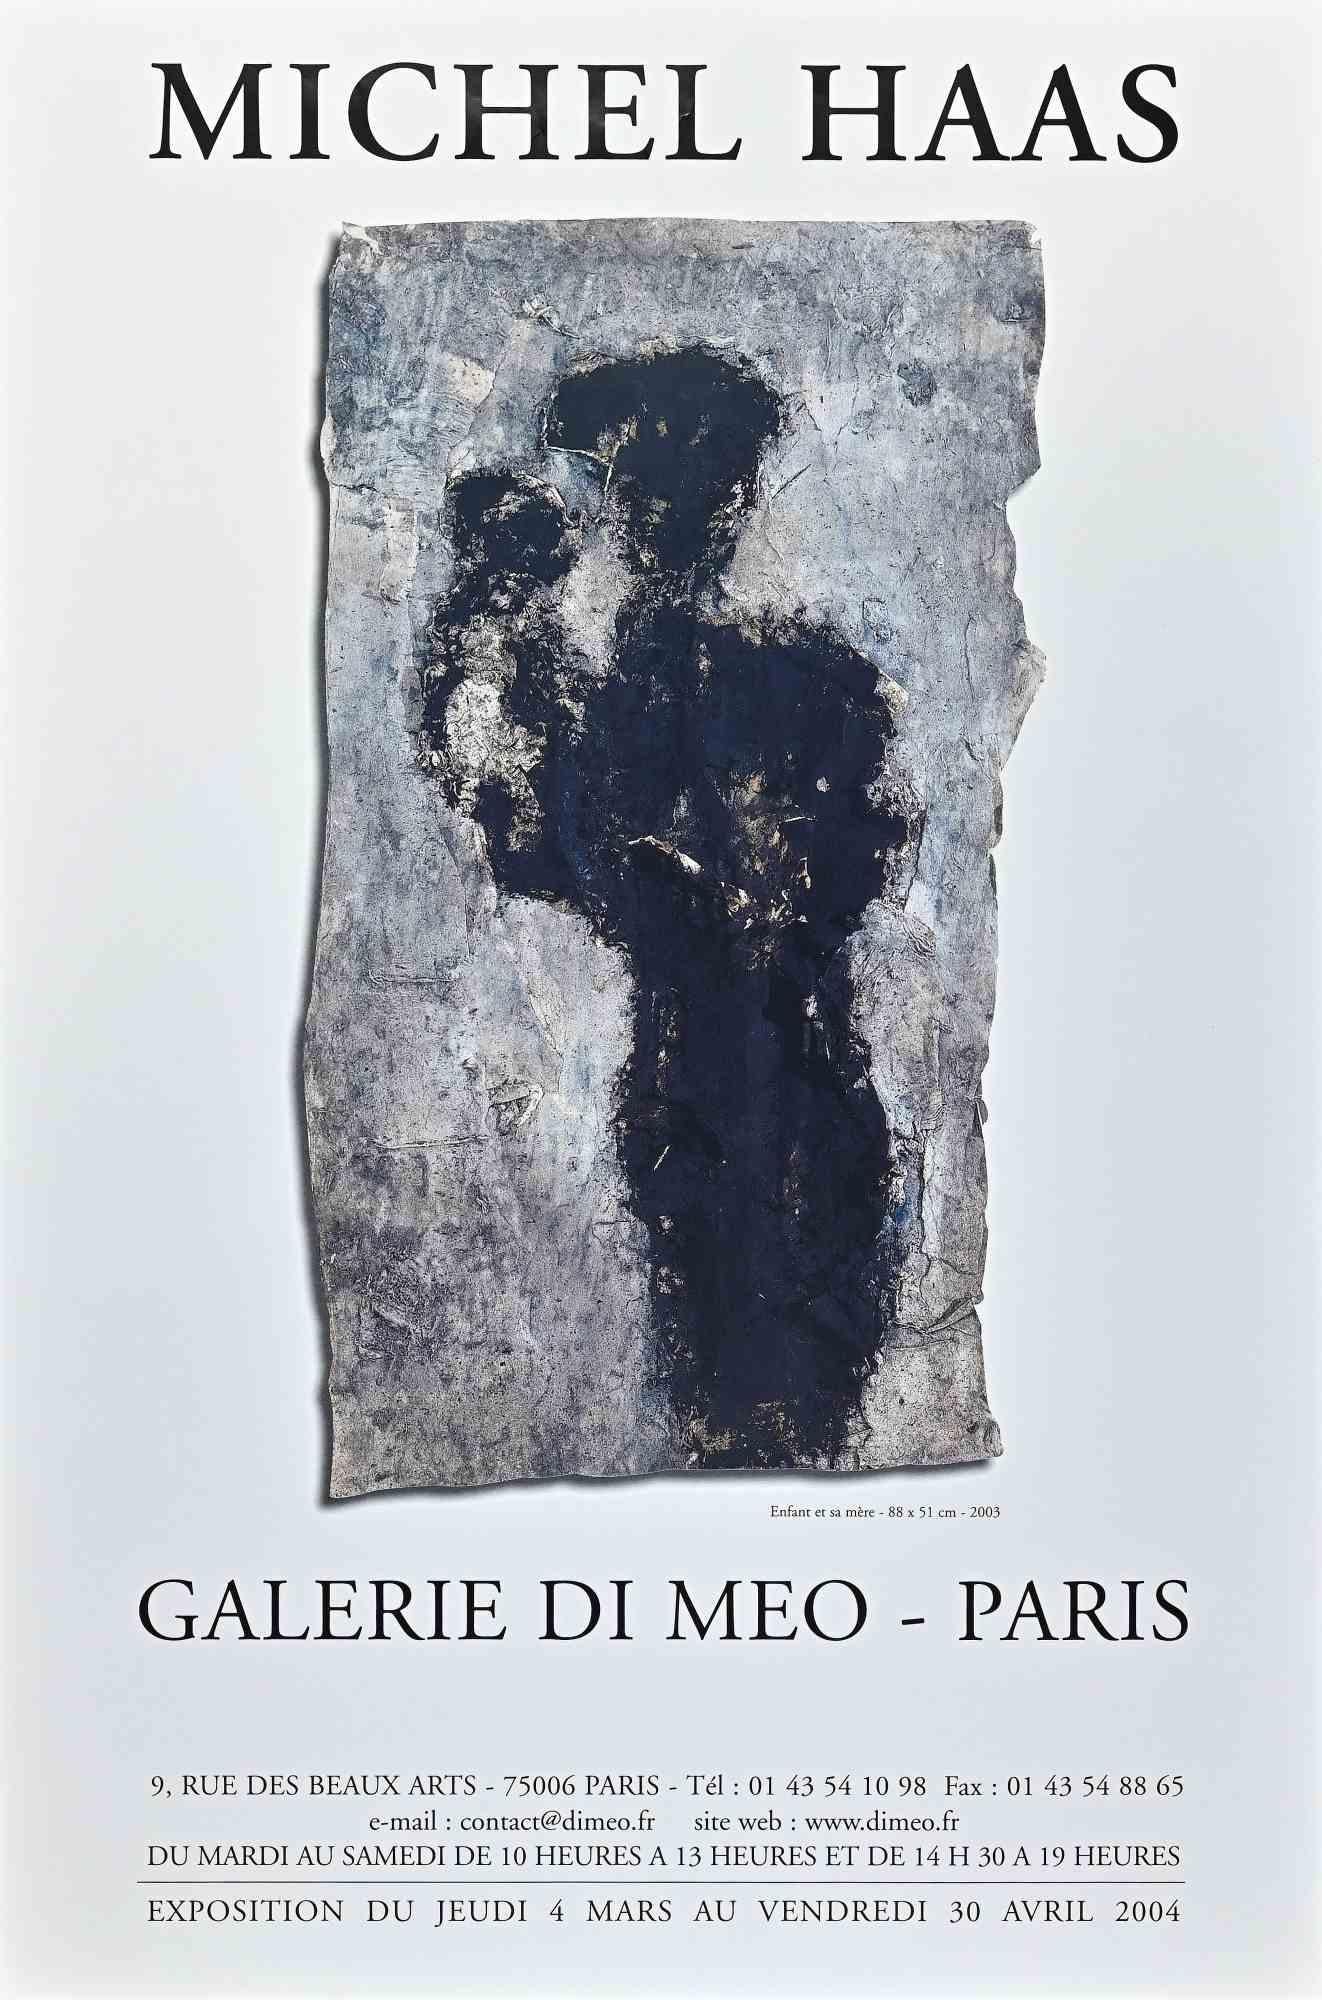 Michel Haas - Poster ist ein Vintage Offset für die Ausstellung von Michel Haas in der Galerie Di Meo Paris im Jahr 2006.

Das Kunstwerk ist in einer ausgewogenen Komposition dargestellt.

 
 